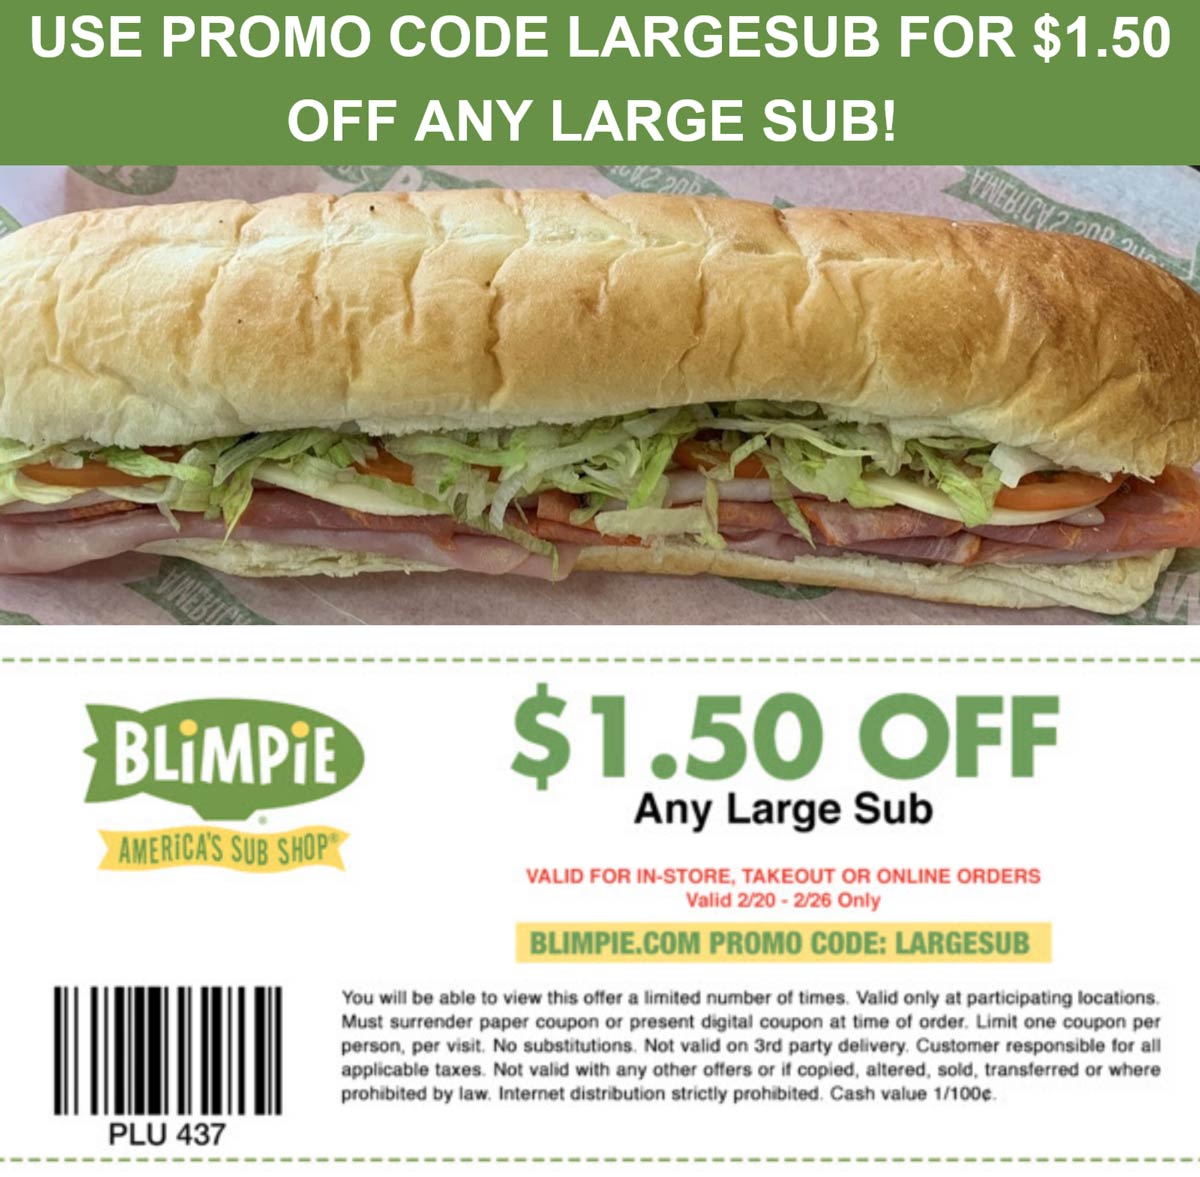 Blimpie restaurants Coupon  $1.50 off a large sub sandwich at Blimpie via promo code LARGESUB #blimpie 